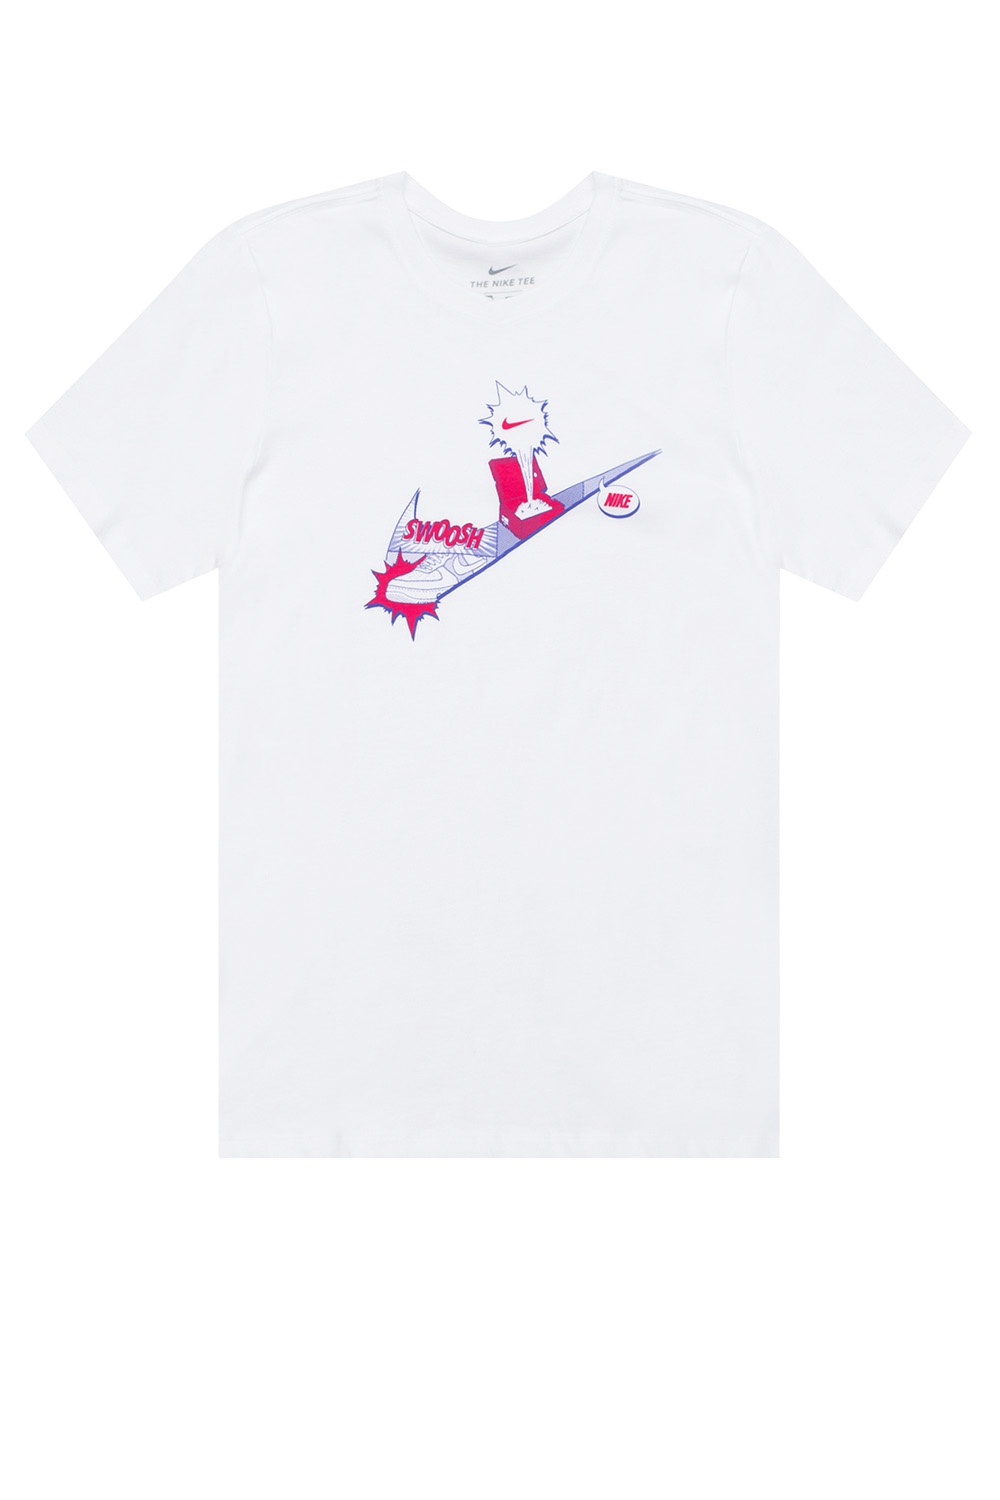 max - IetpShops nike cool shirt Nike cool free mesh Nepal - White printable air - lawsuits Logo 2017 T